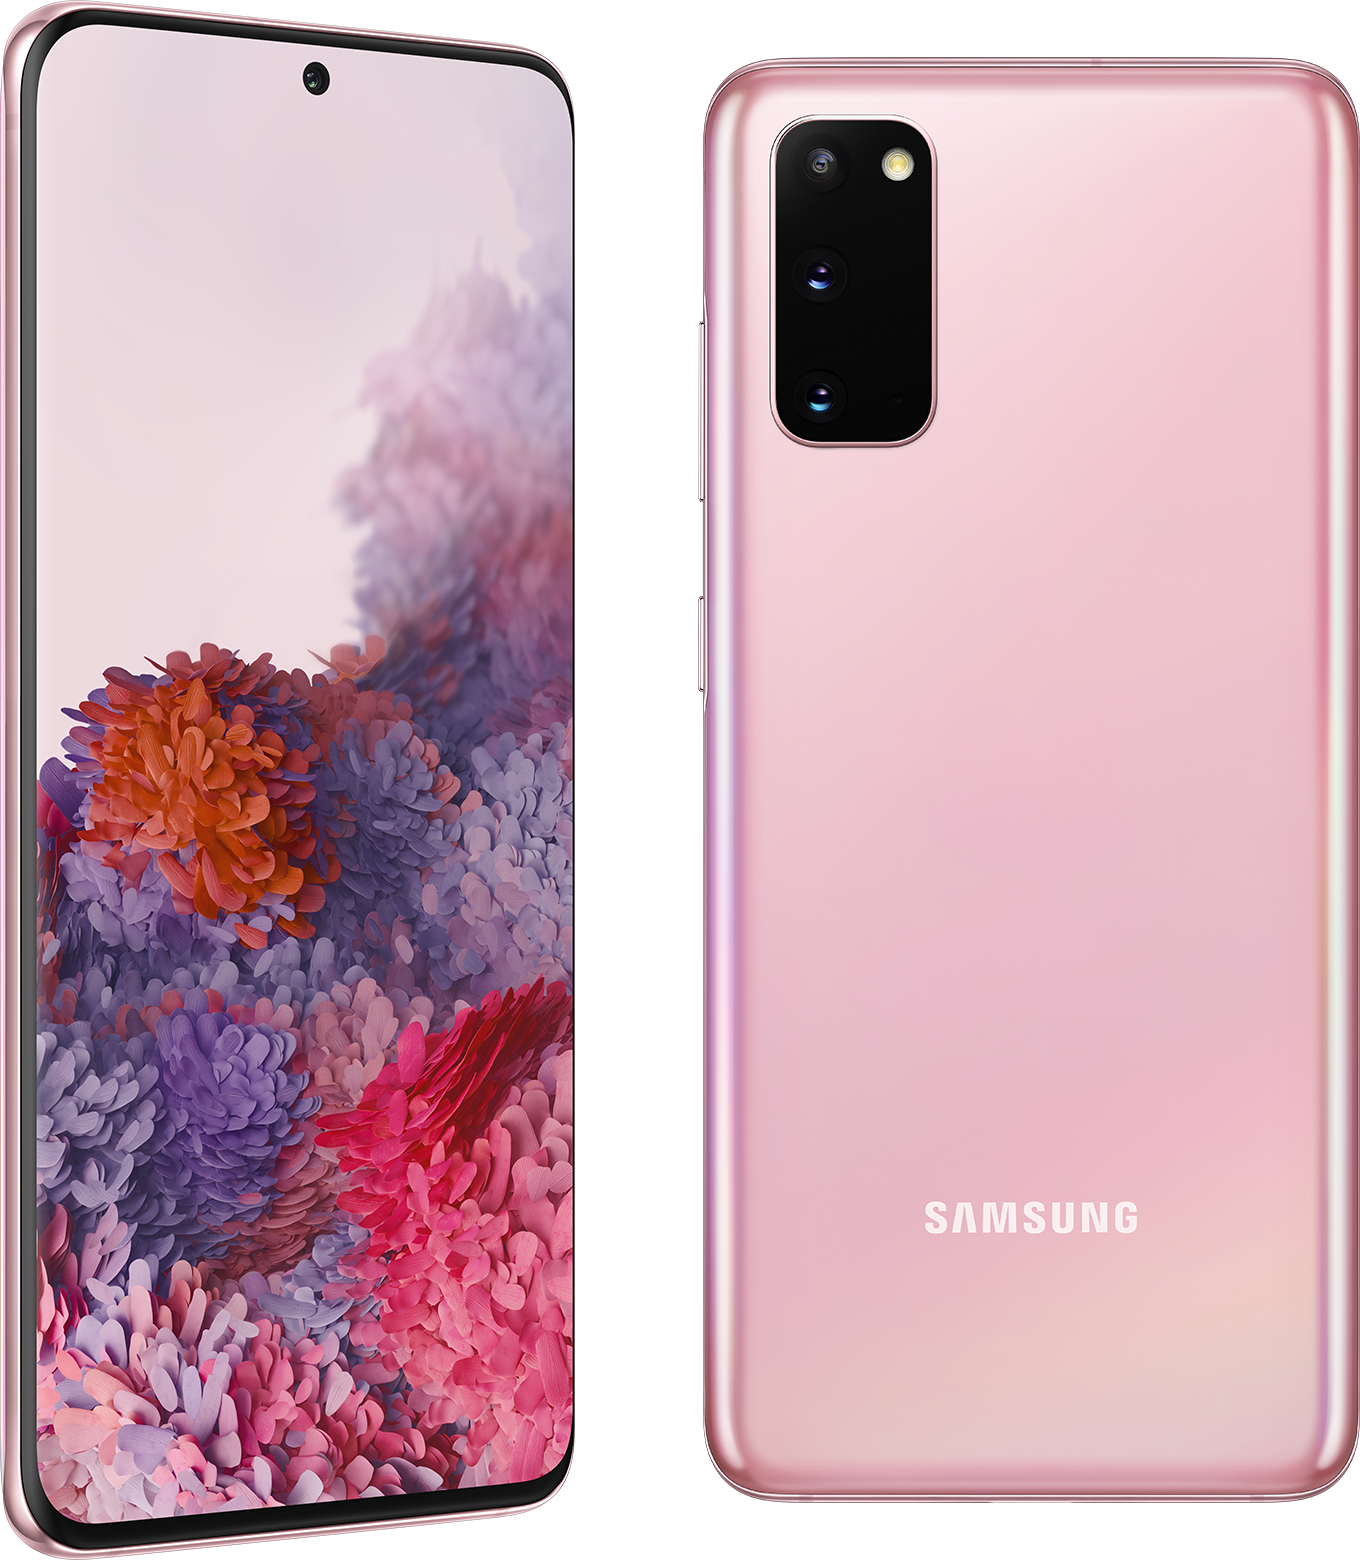 Samsung Galaxy S20 5G - Cloud Pink, 6.2" inch, 5G, 128GB